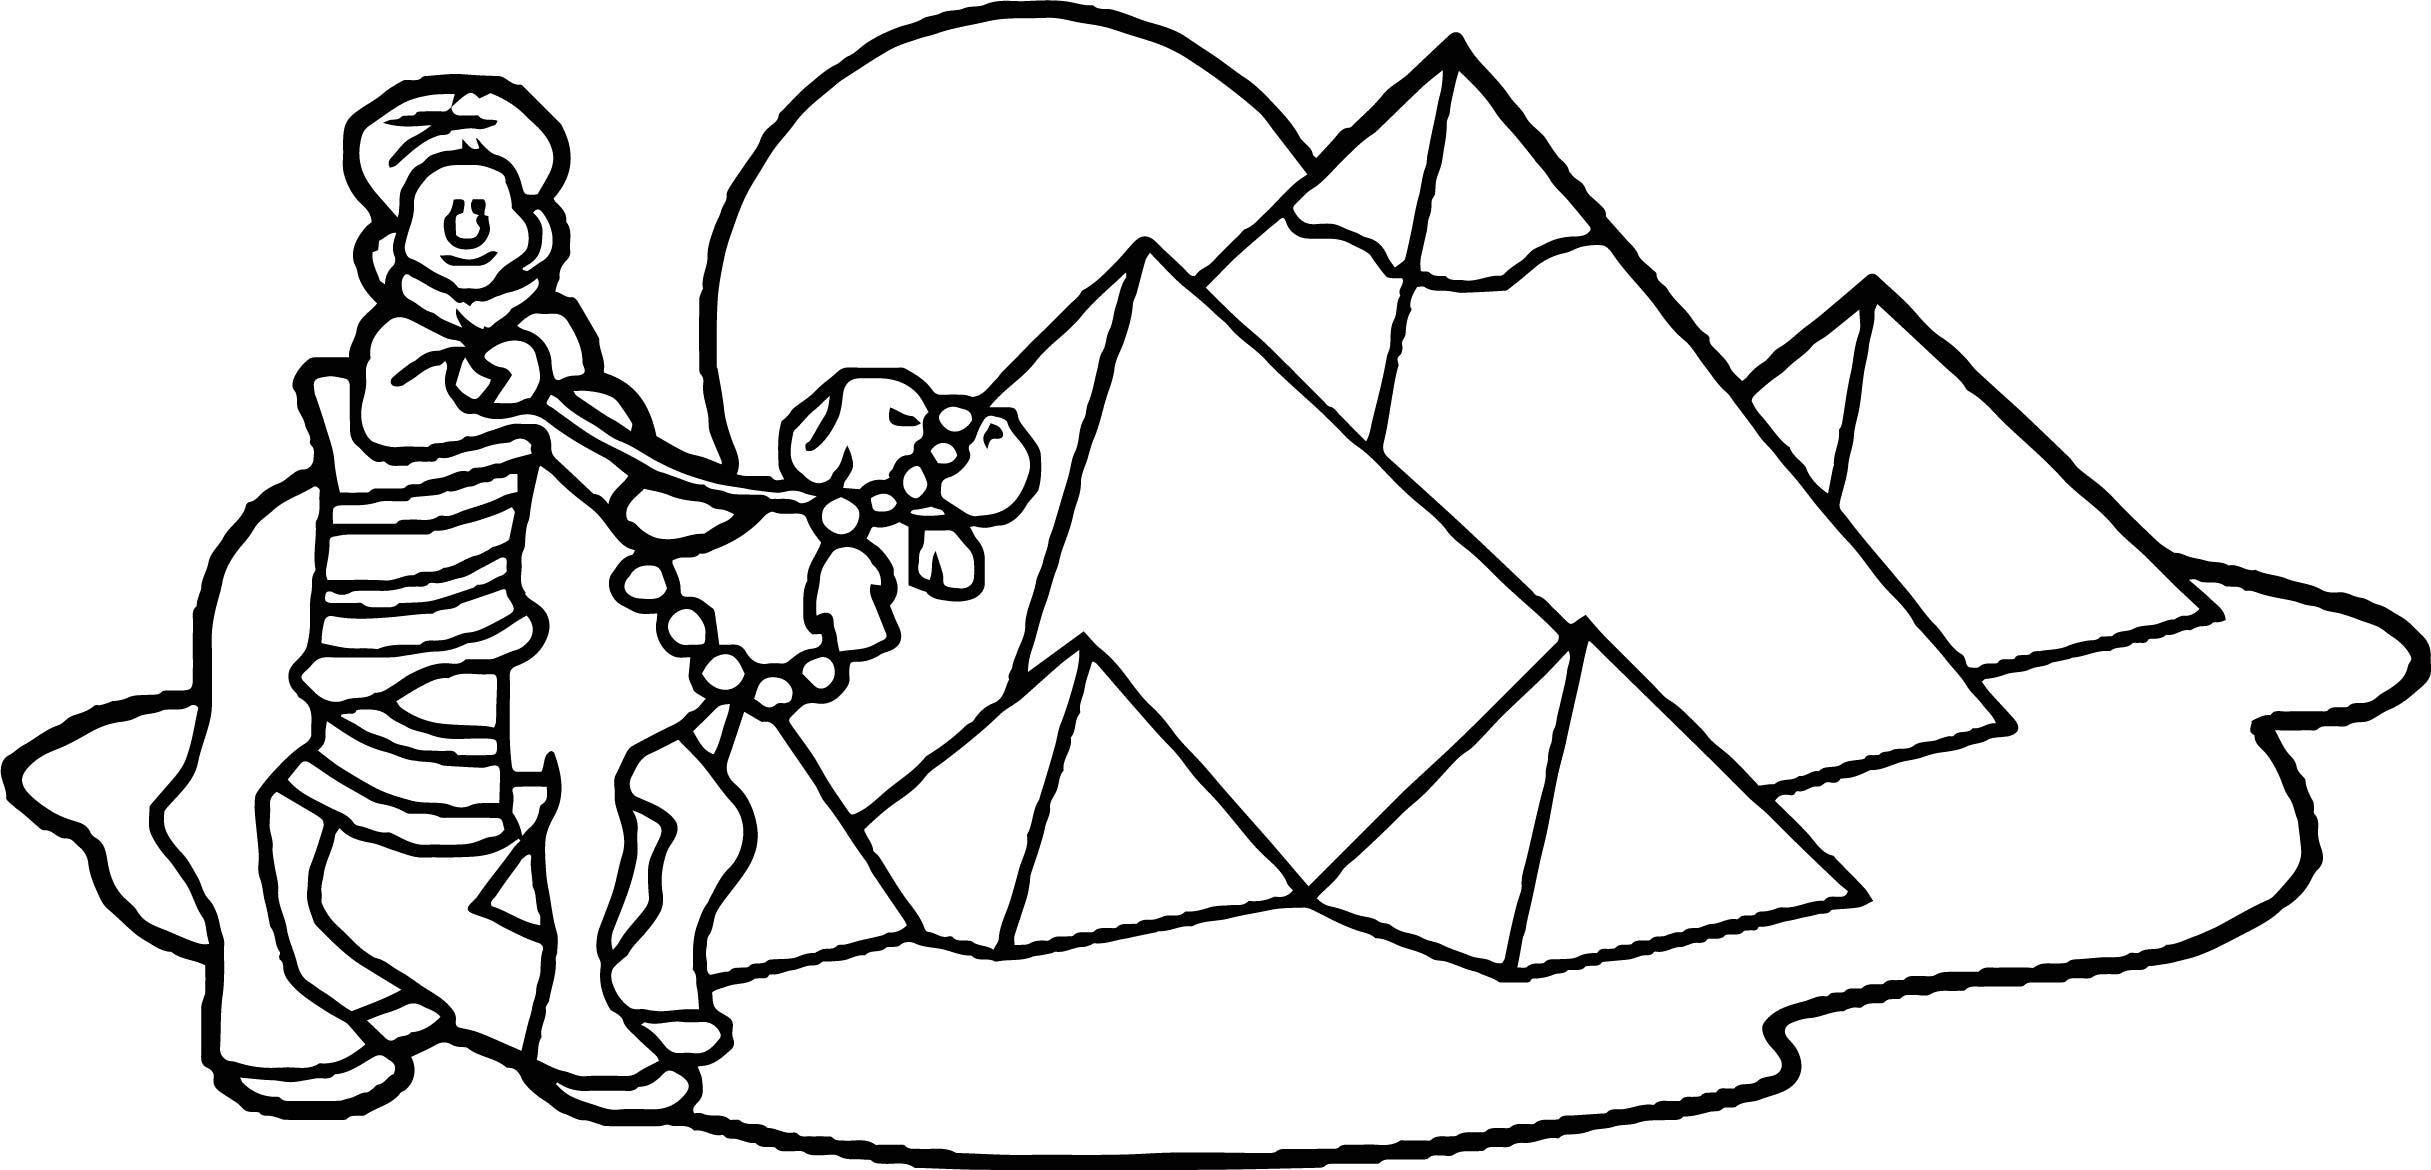 Играть в раскраску Пирамида онлайн